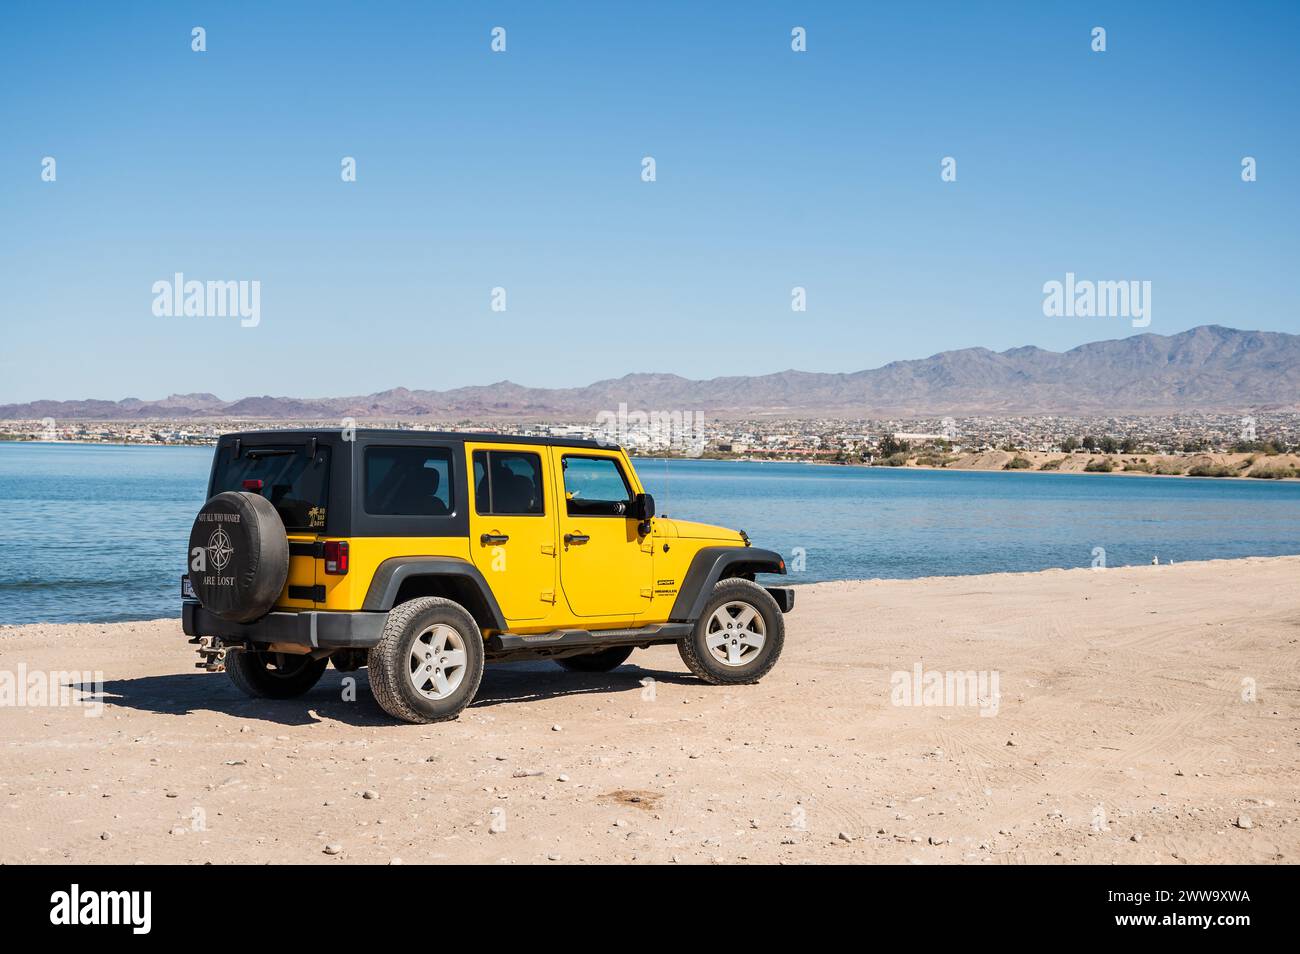 Un Jeep amarillo conduce a lo largo de las orillas del lago Havasu Arizona, EE.UU. Foto de stock